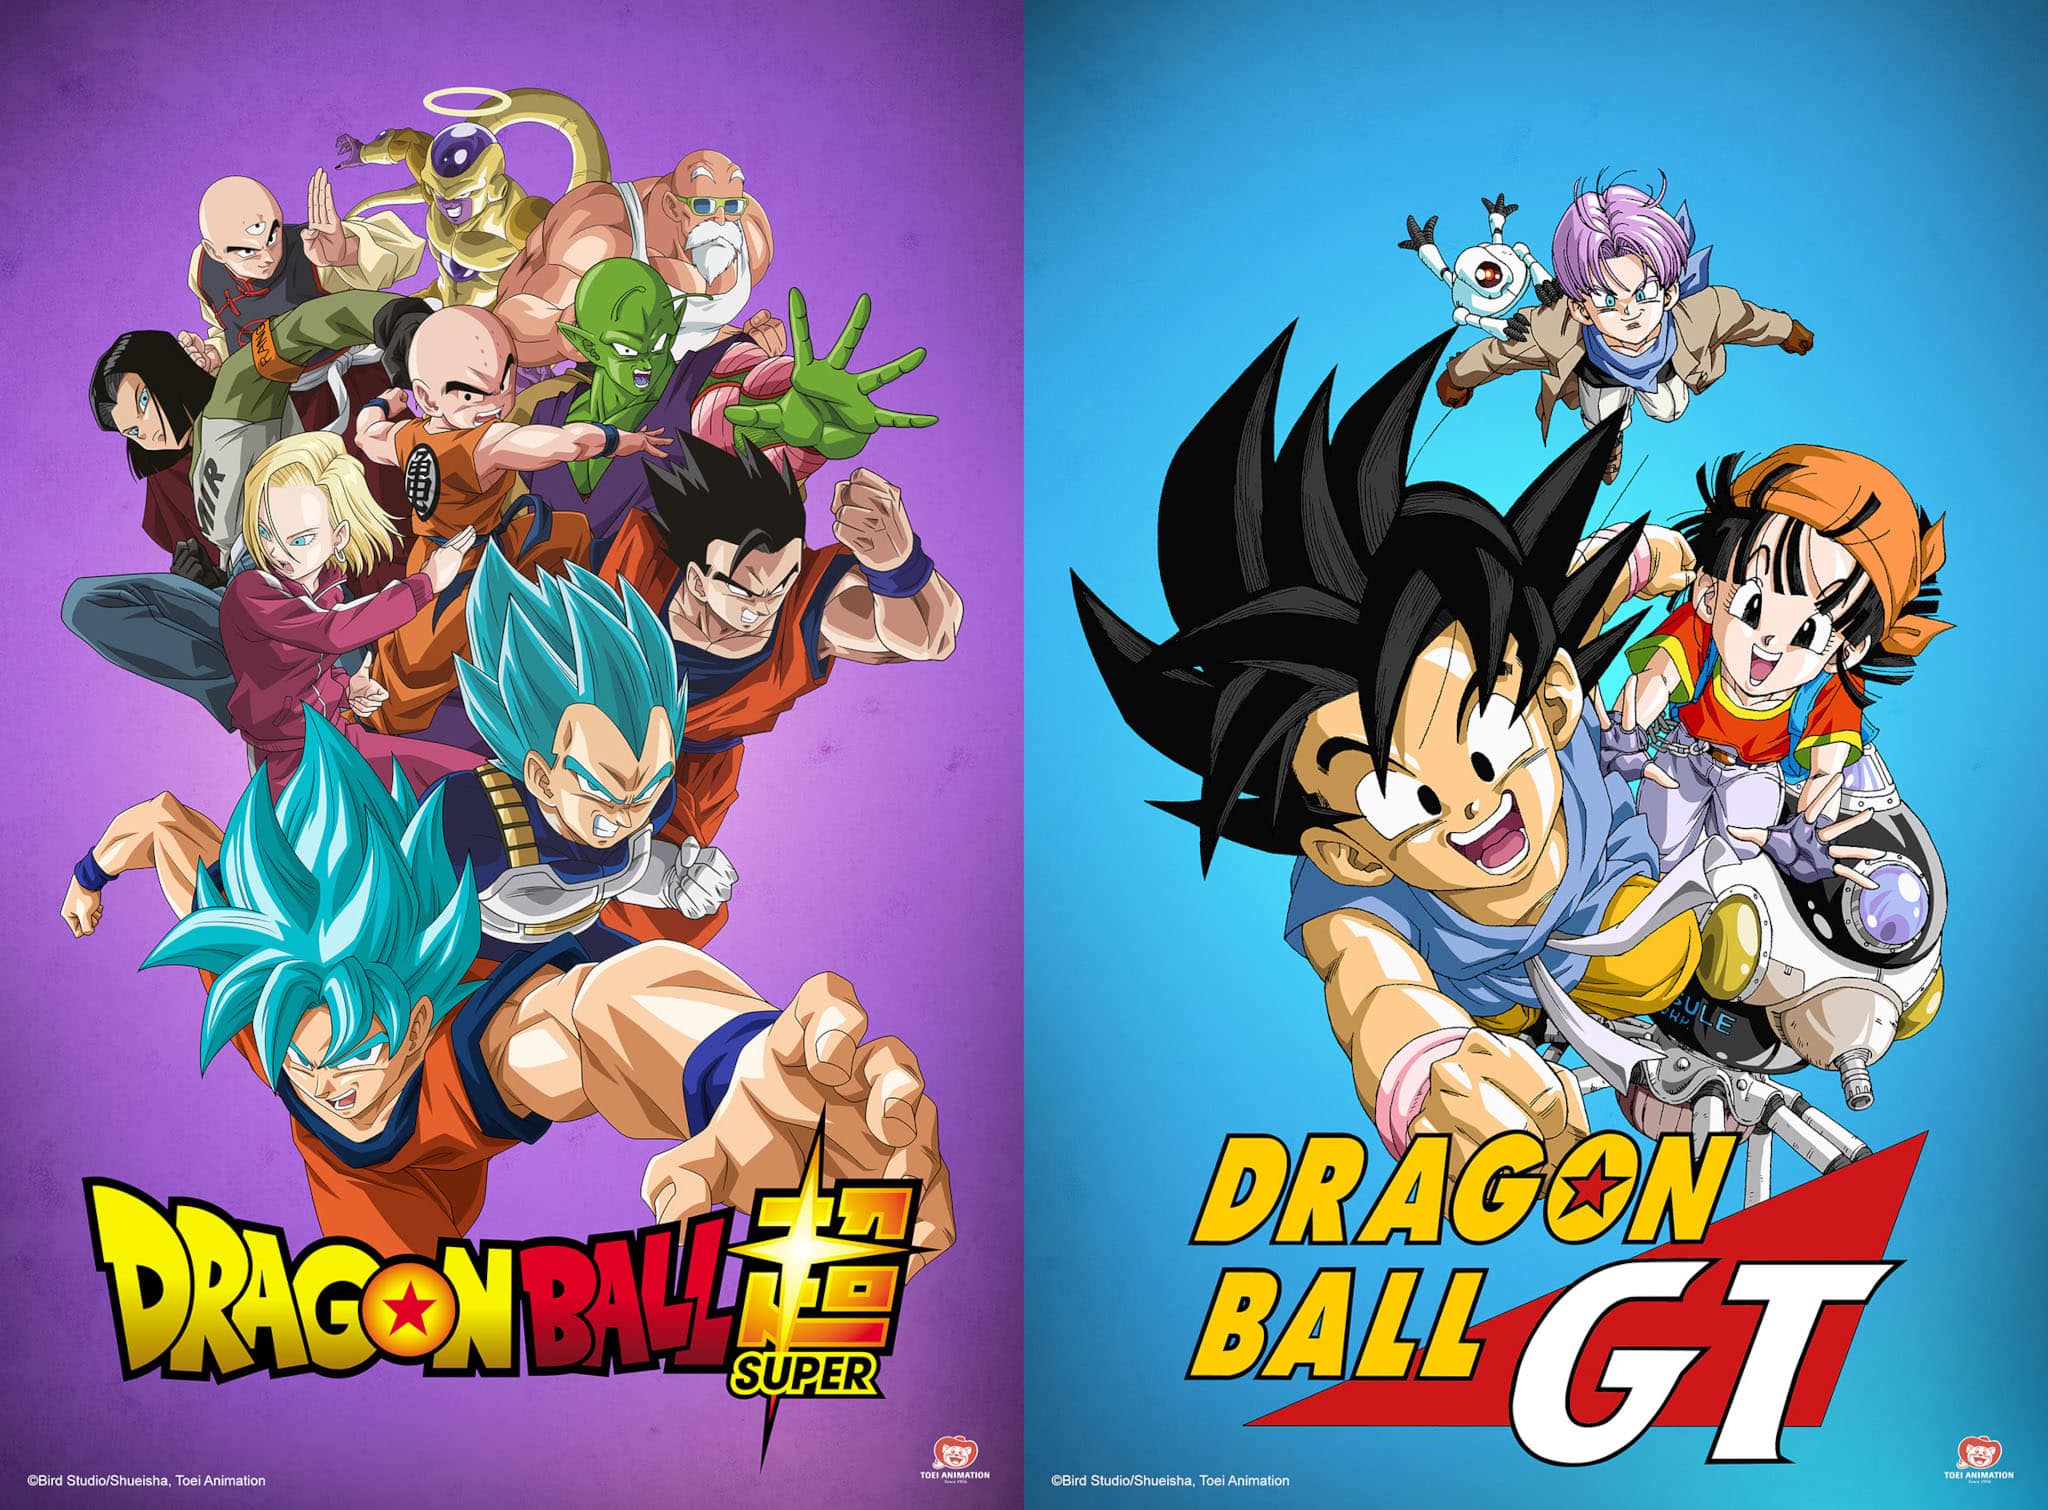 Annonce de la date de sortie sur Crunchyroll des animes Dragon Ball Super et Dragon Ball GT.